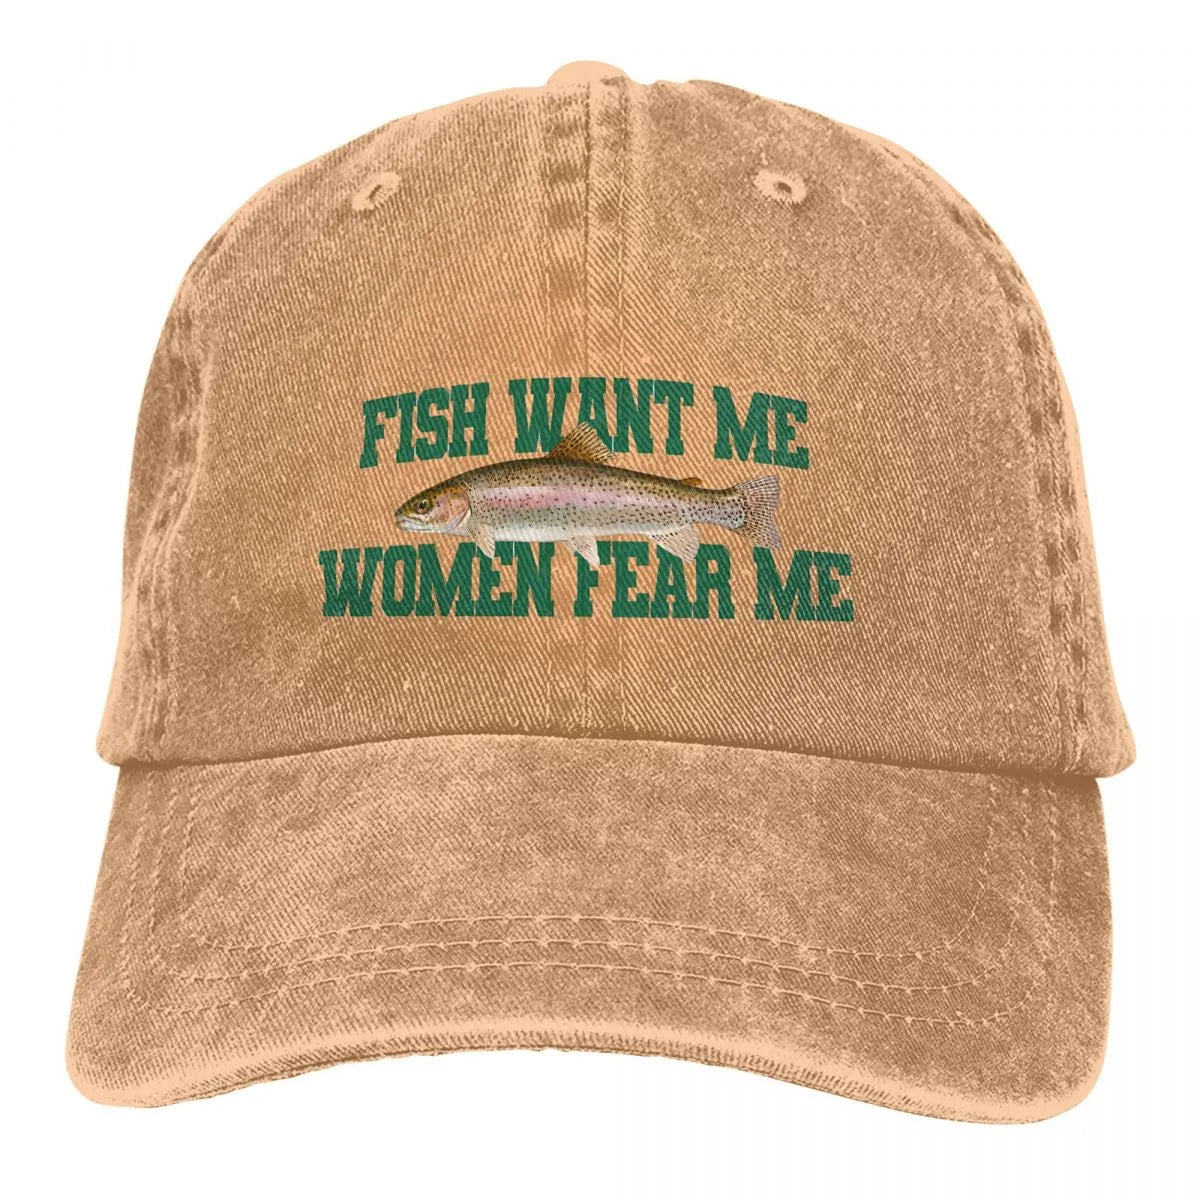 Fish Want Me Women Fear Me Meme Cap – Taraiga